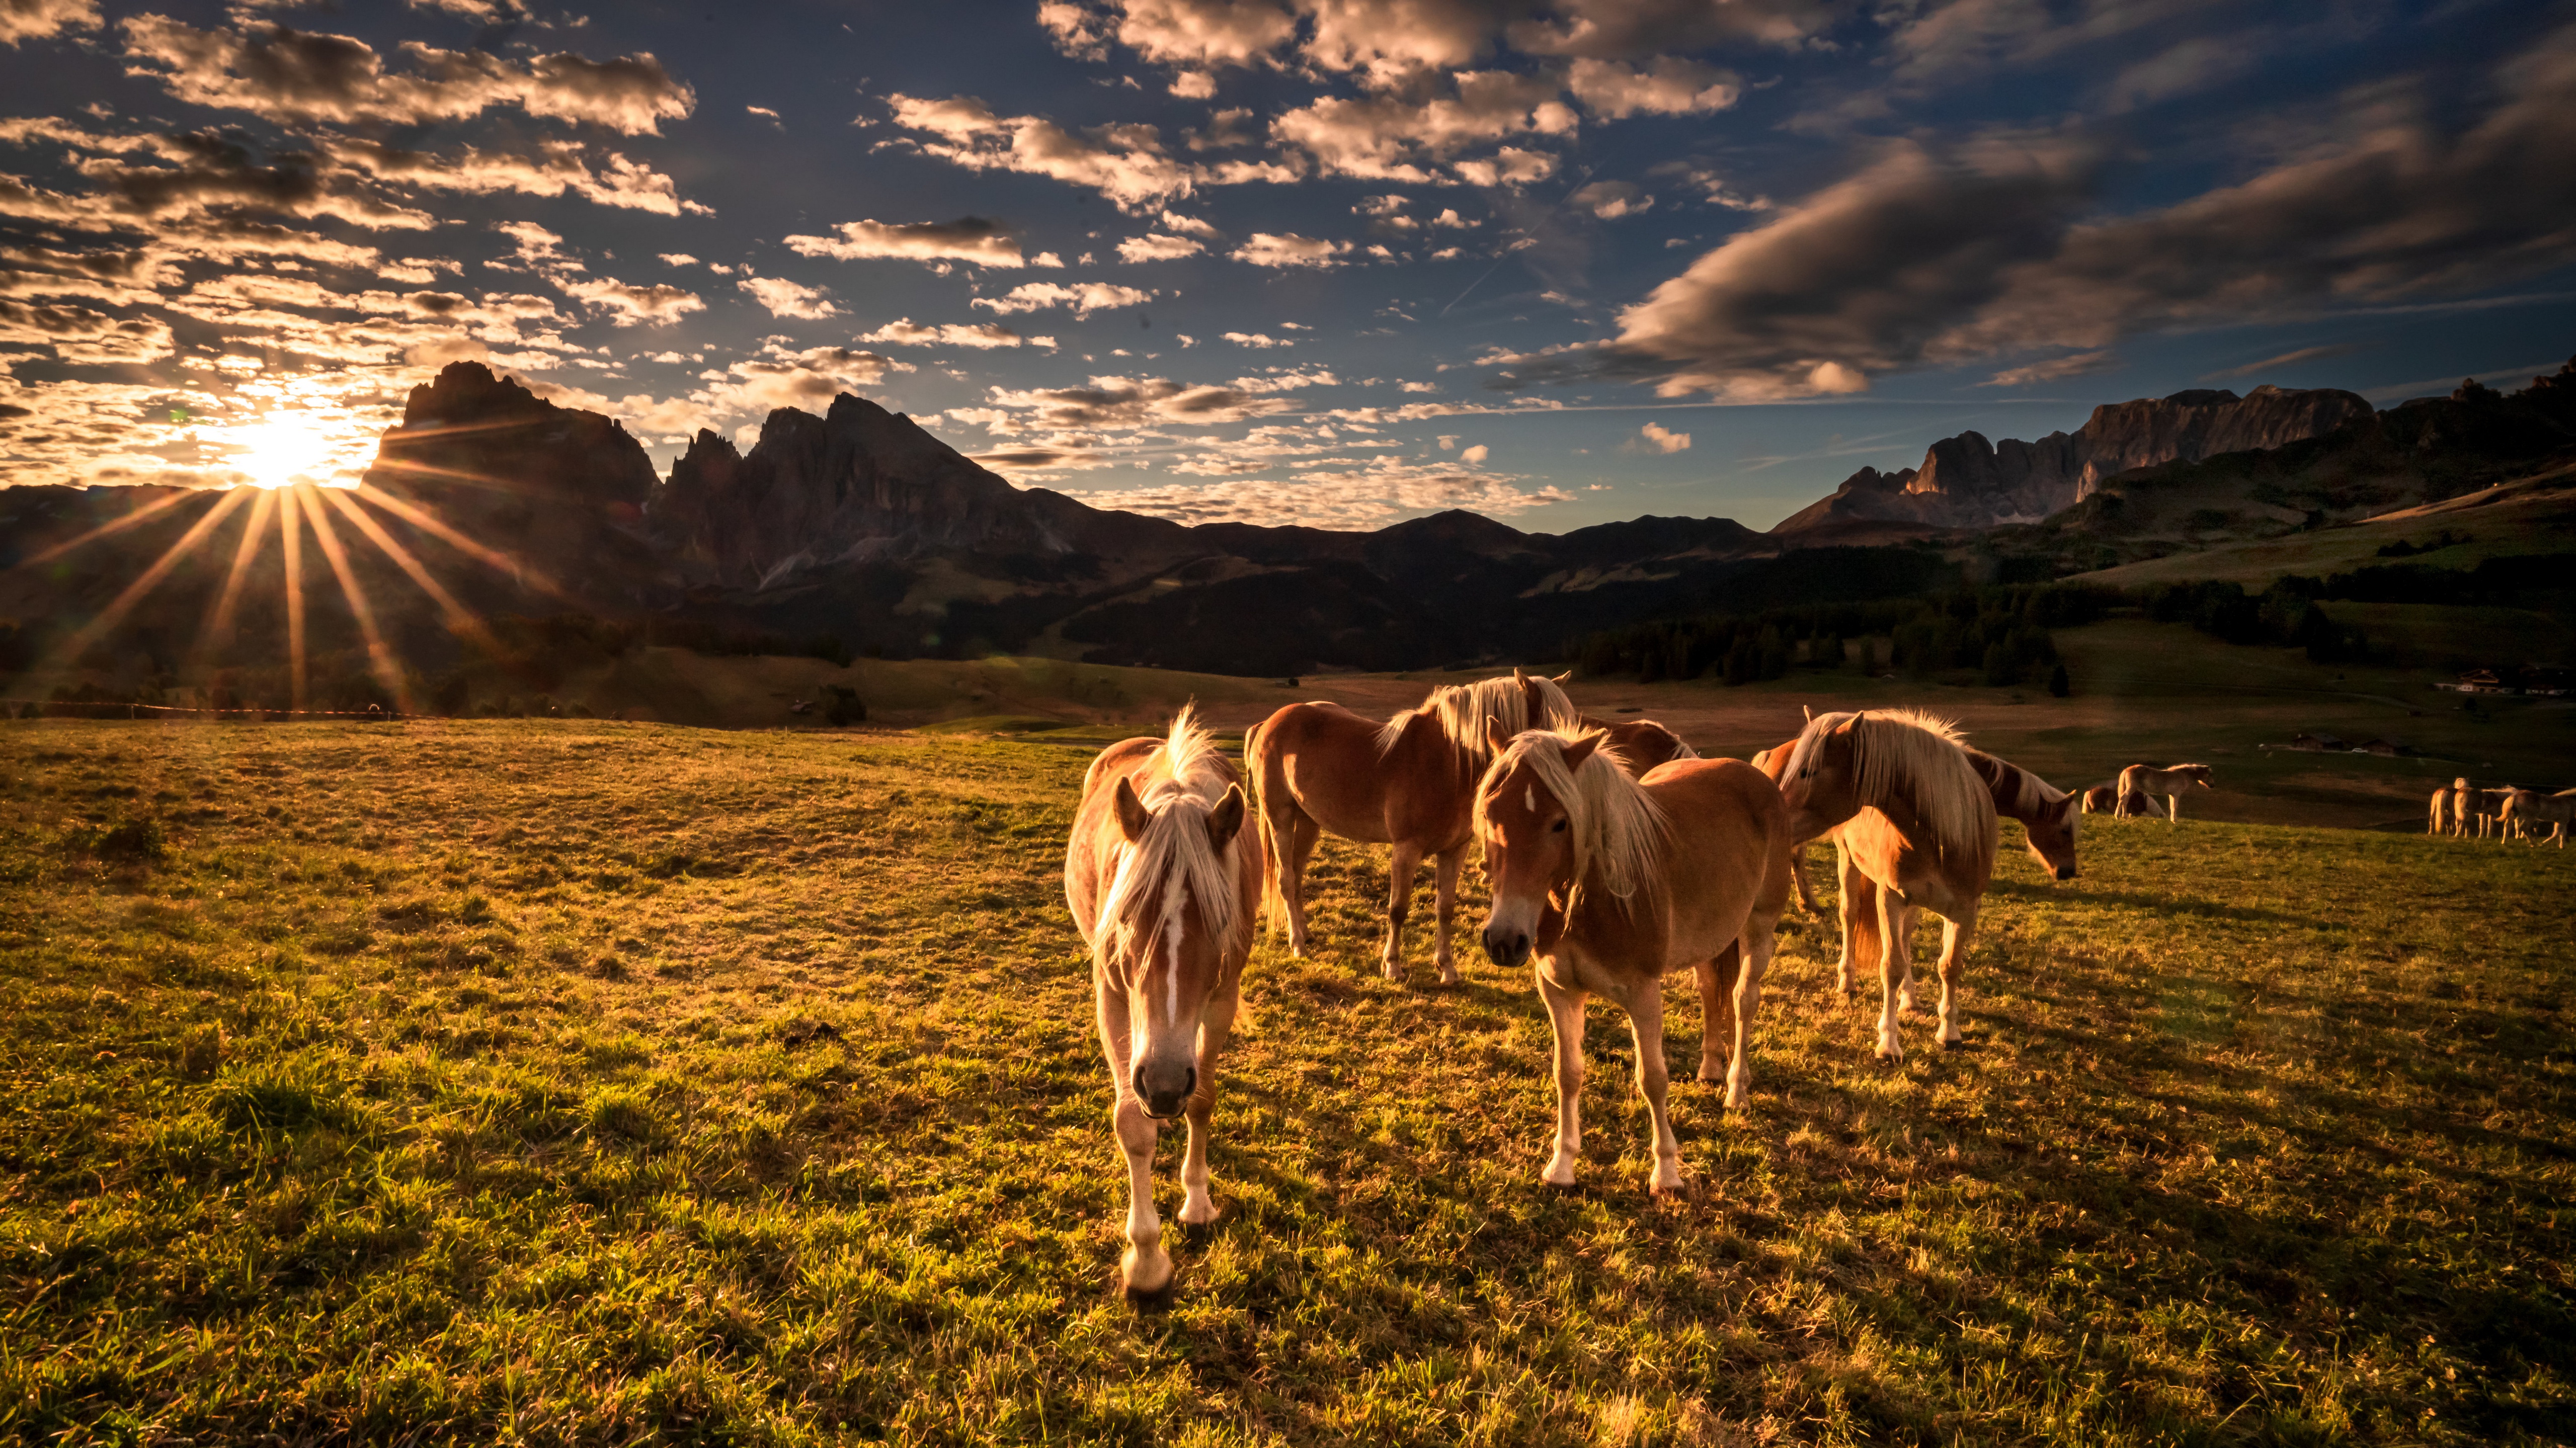 Скачать обои бесплатно Животные, Италия, Лошадь, Доломитовые Альпы картинка на рабочий стол ПК